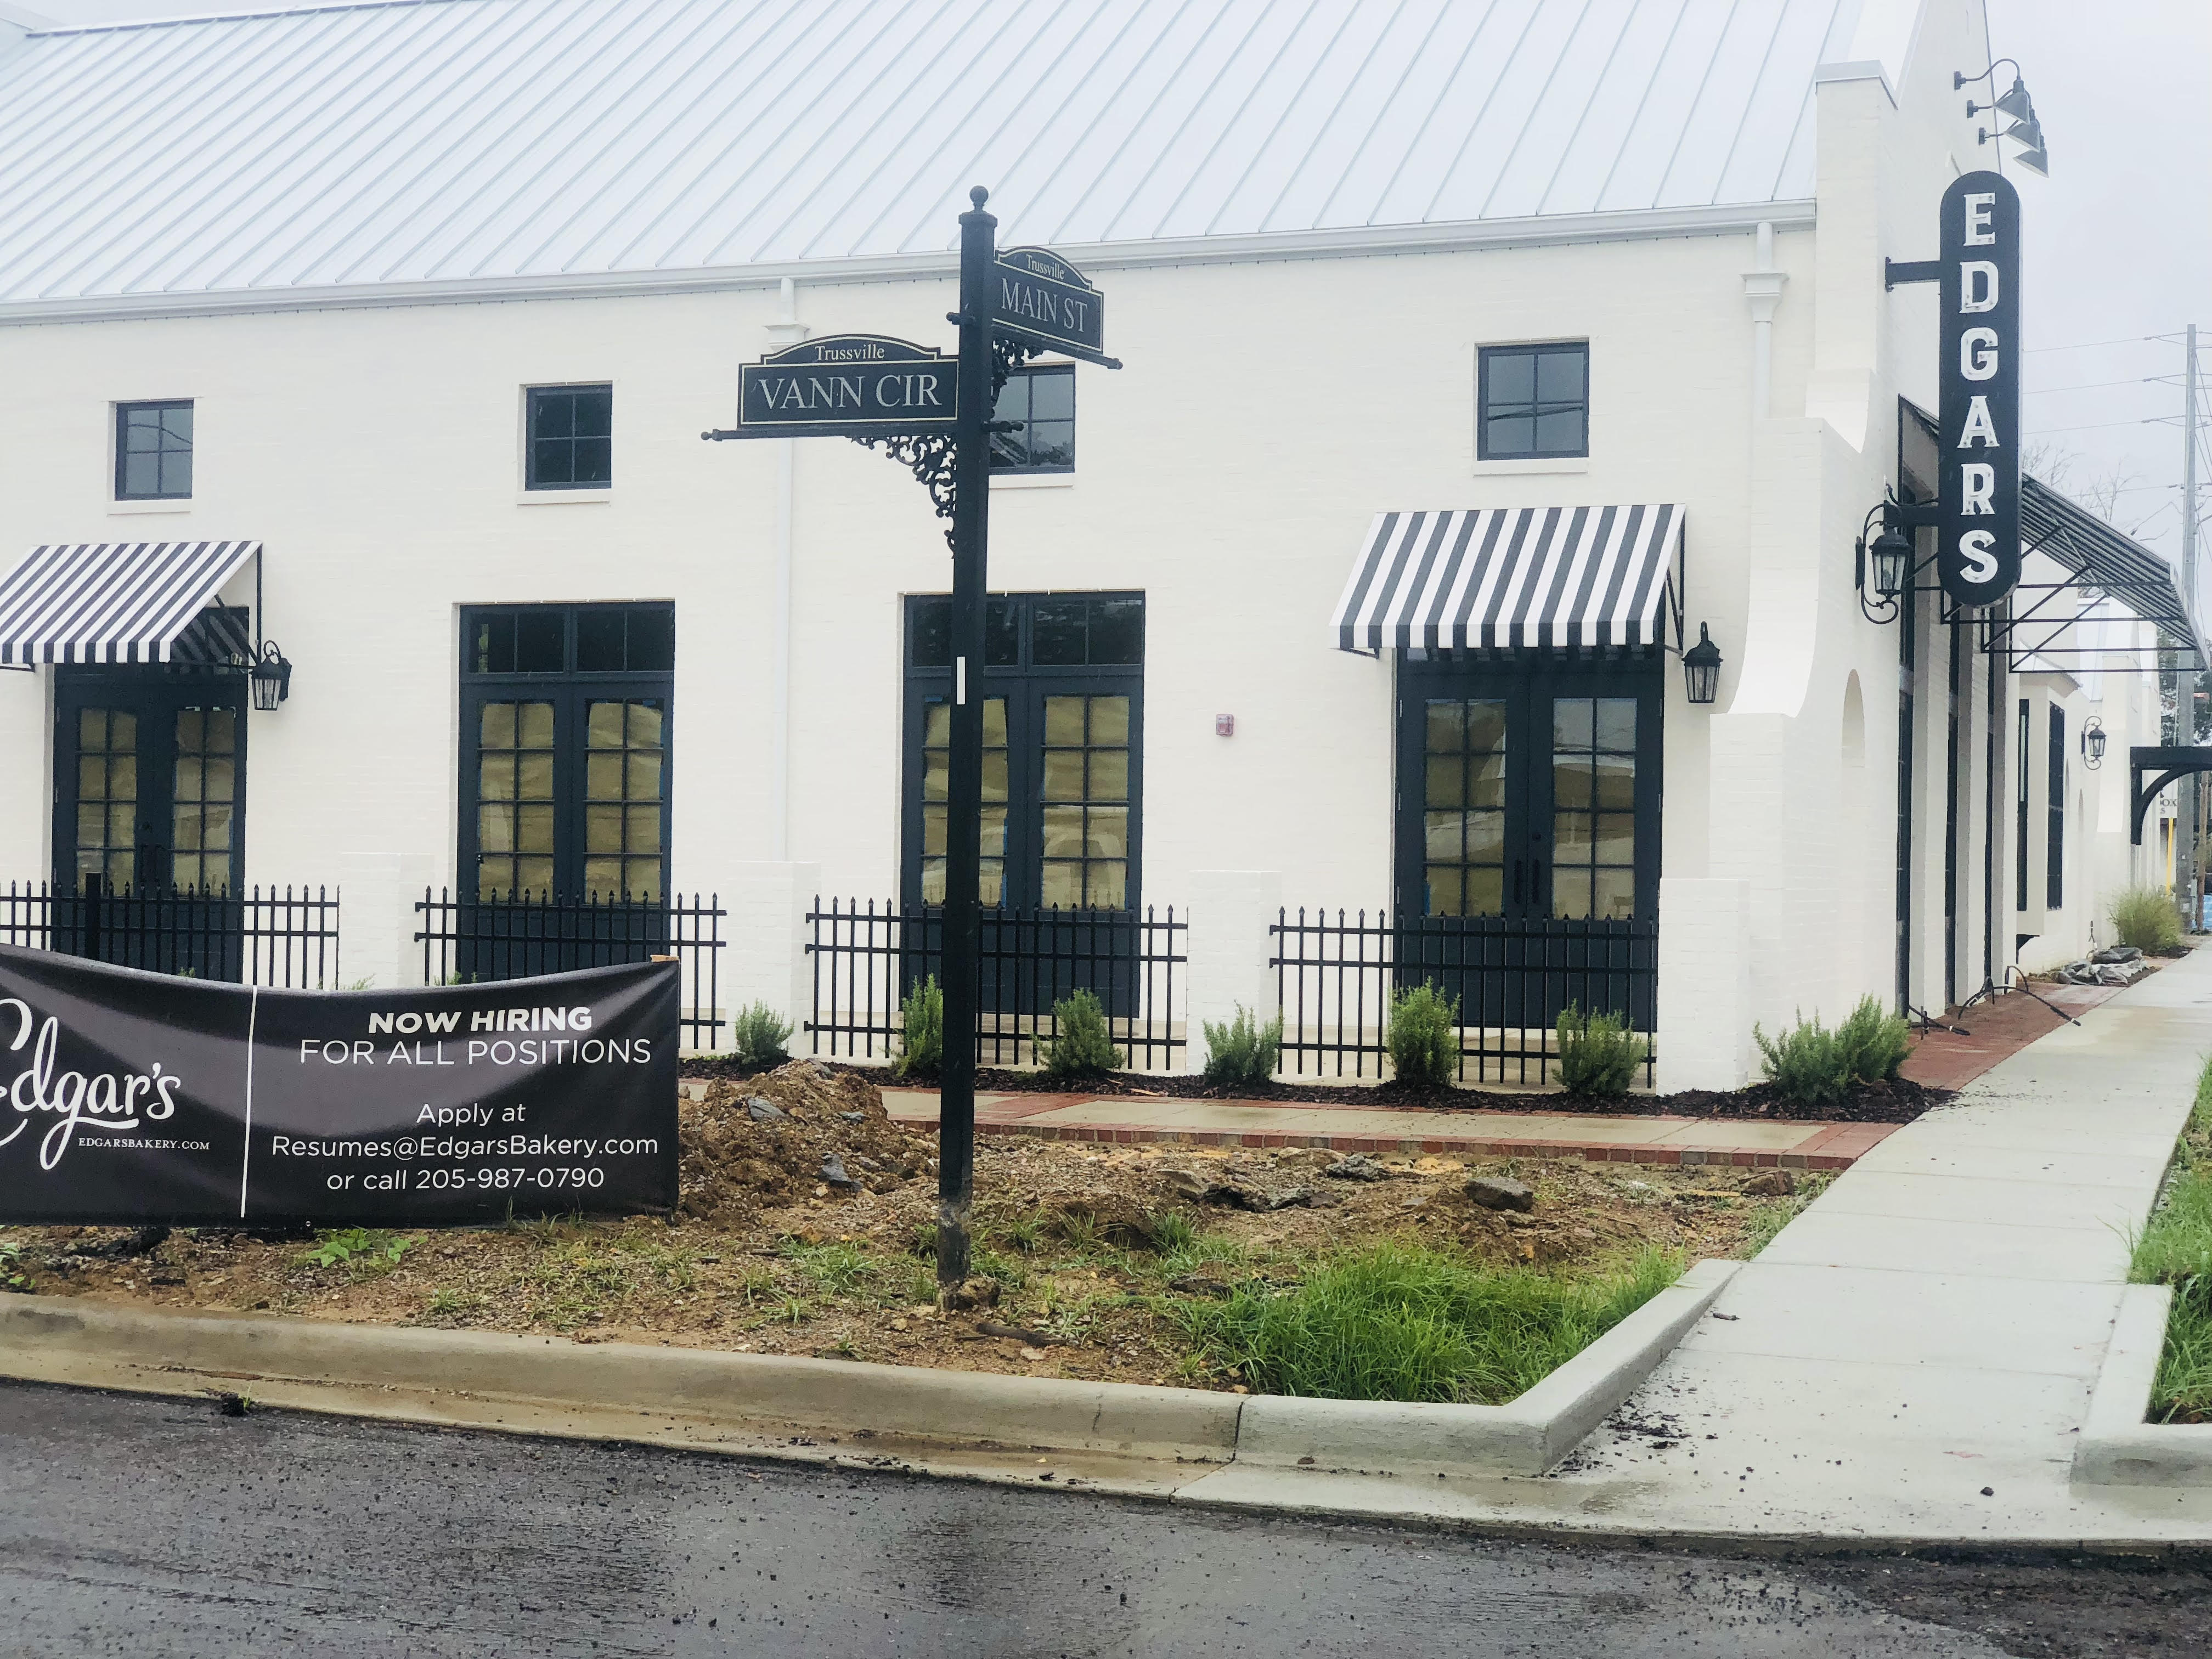 Edgar’s Bakery in Trussville to open in September